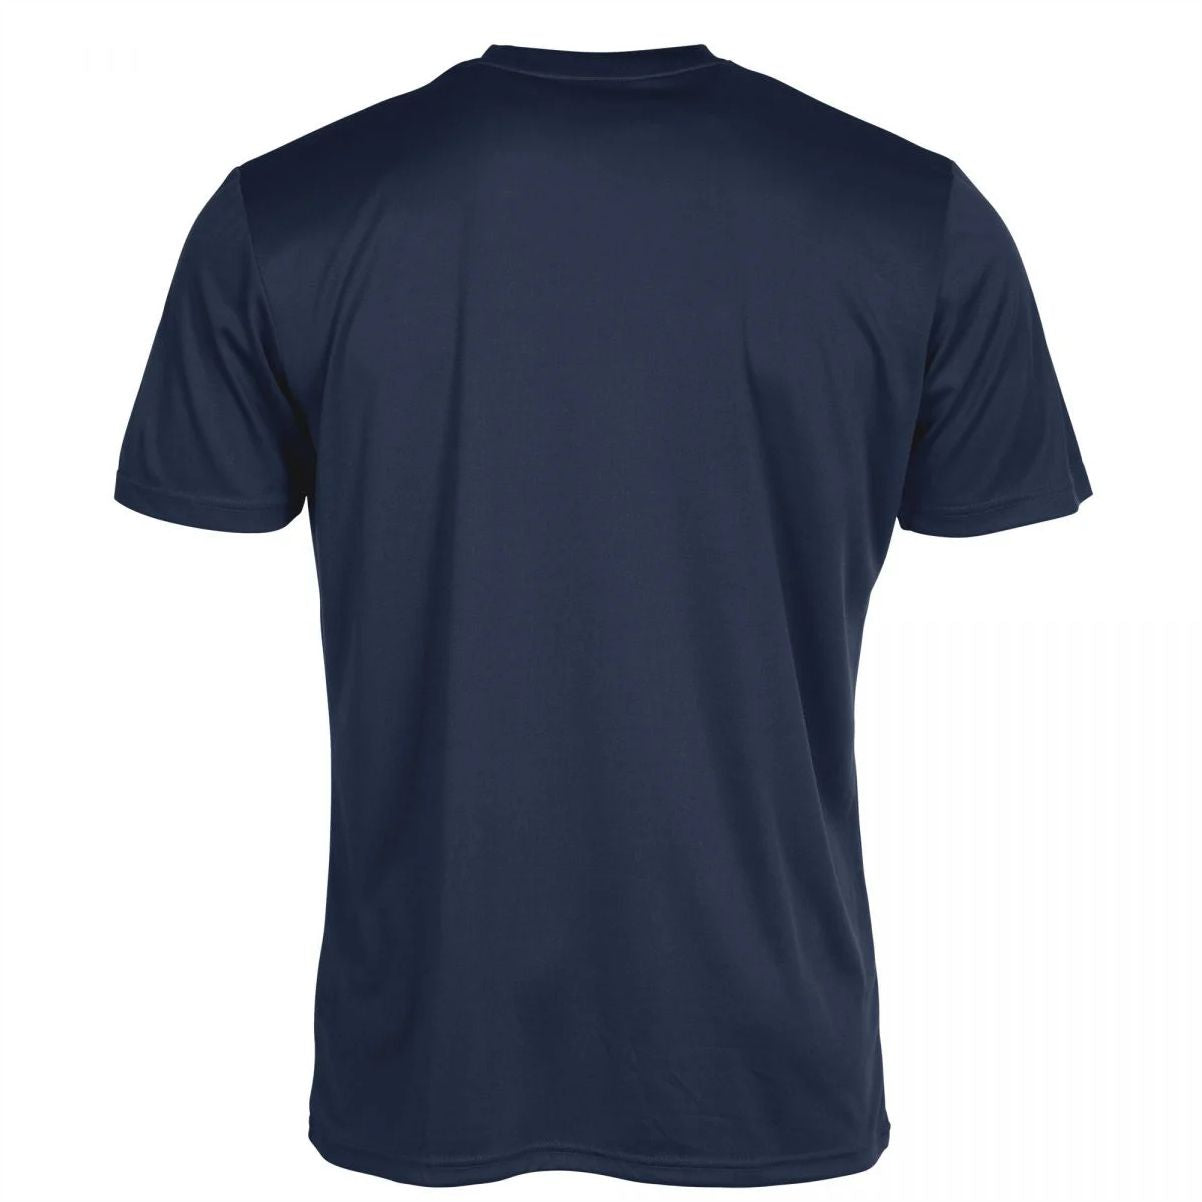 Stanno - Field Shirt - Navy